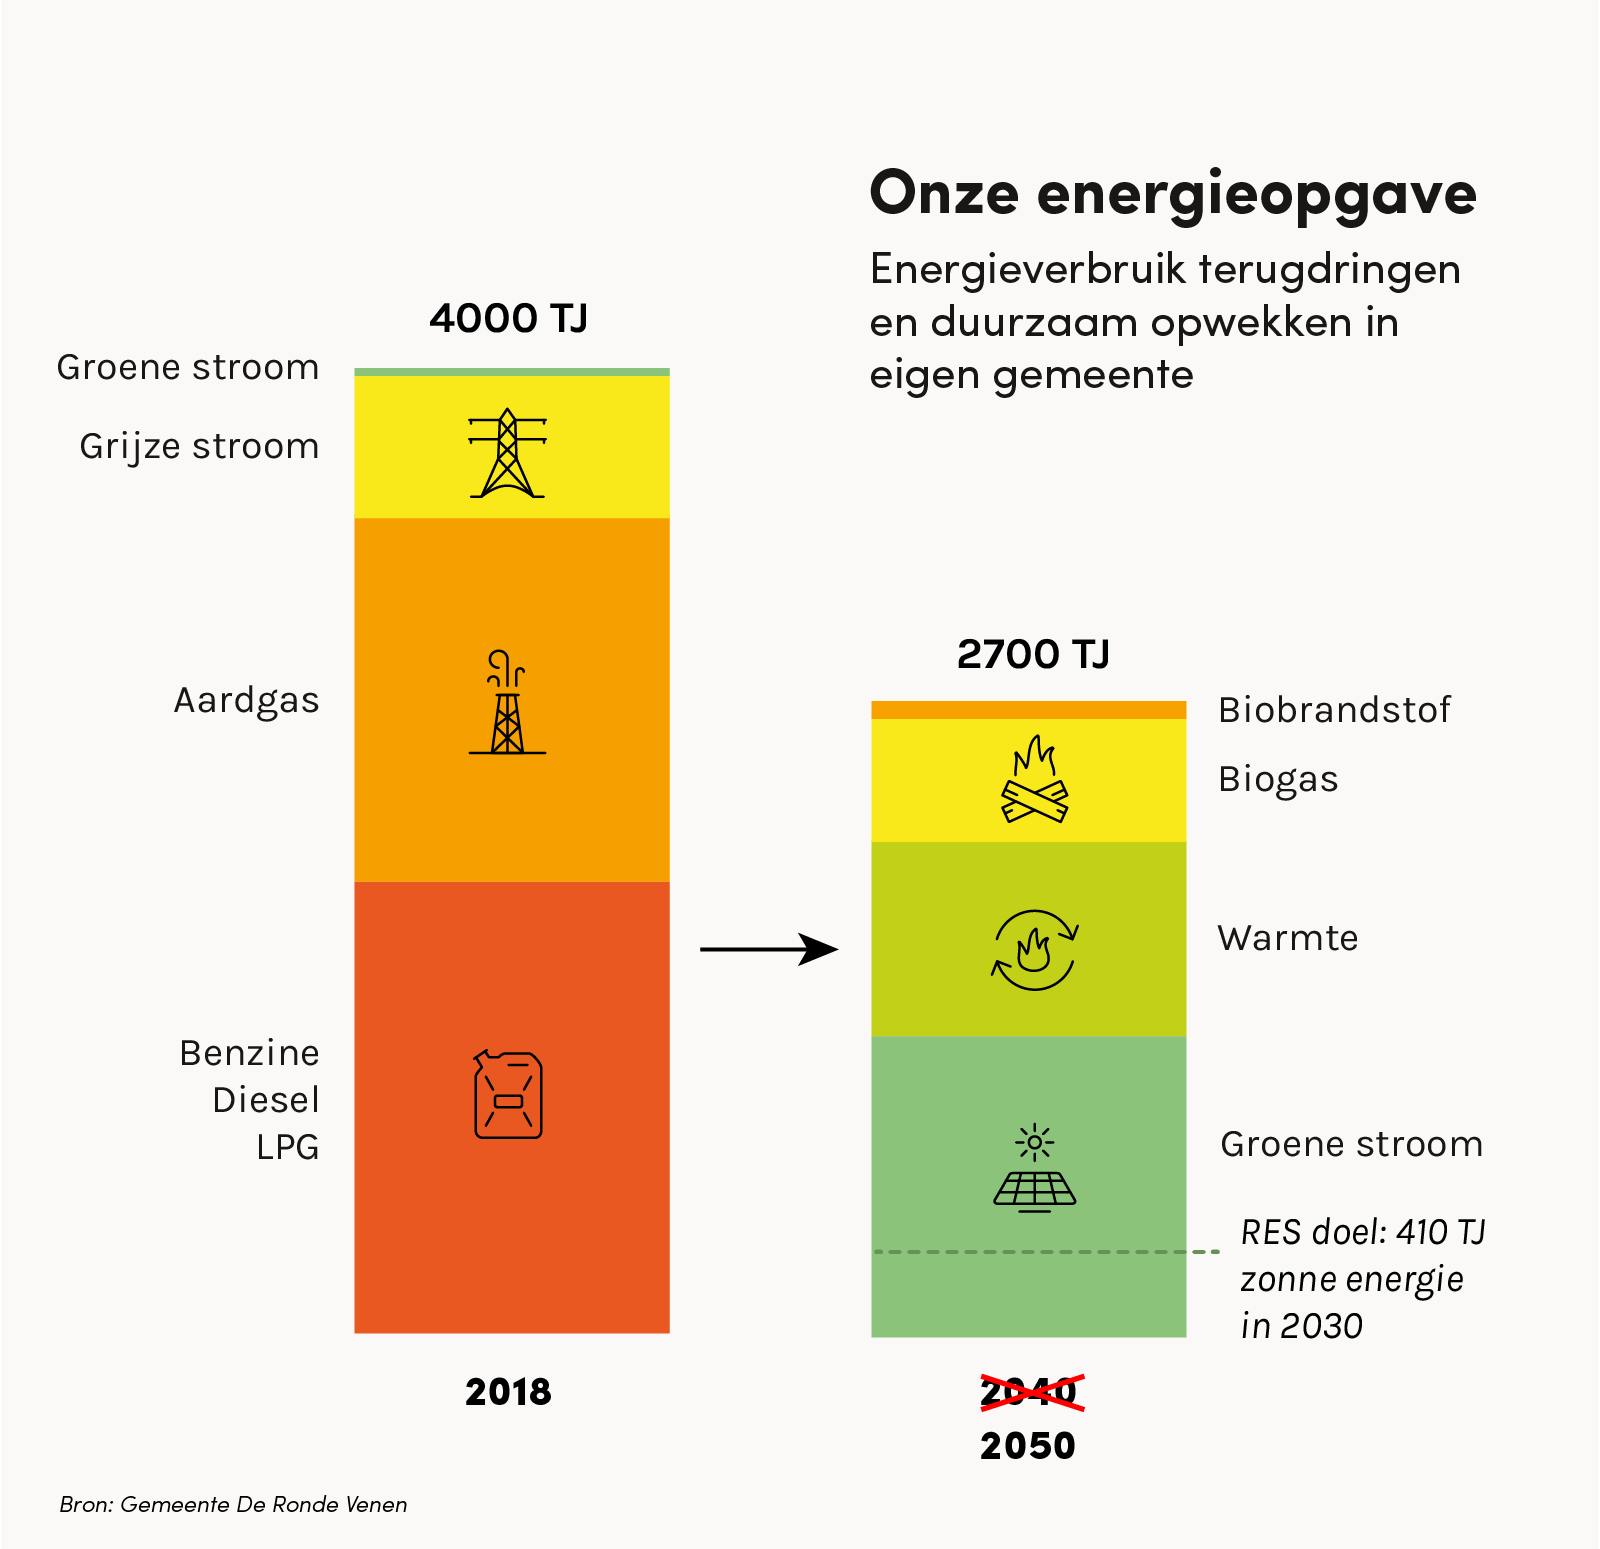 Energieopgave-de-ronde-venen-klimaatneutraal-2050